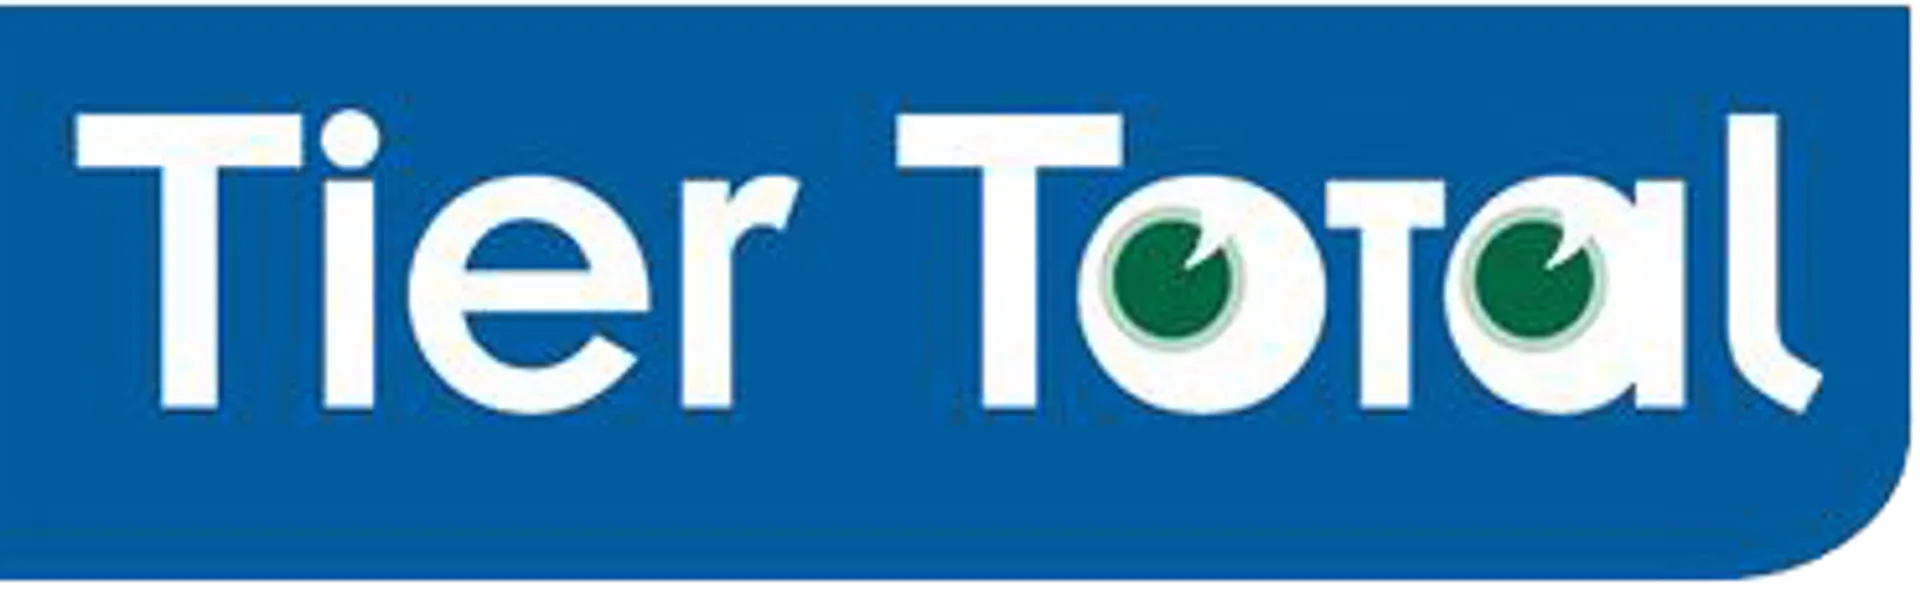 TIER TOTAL logo die aktuell Flugblatt